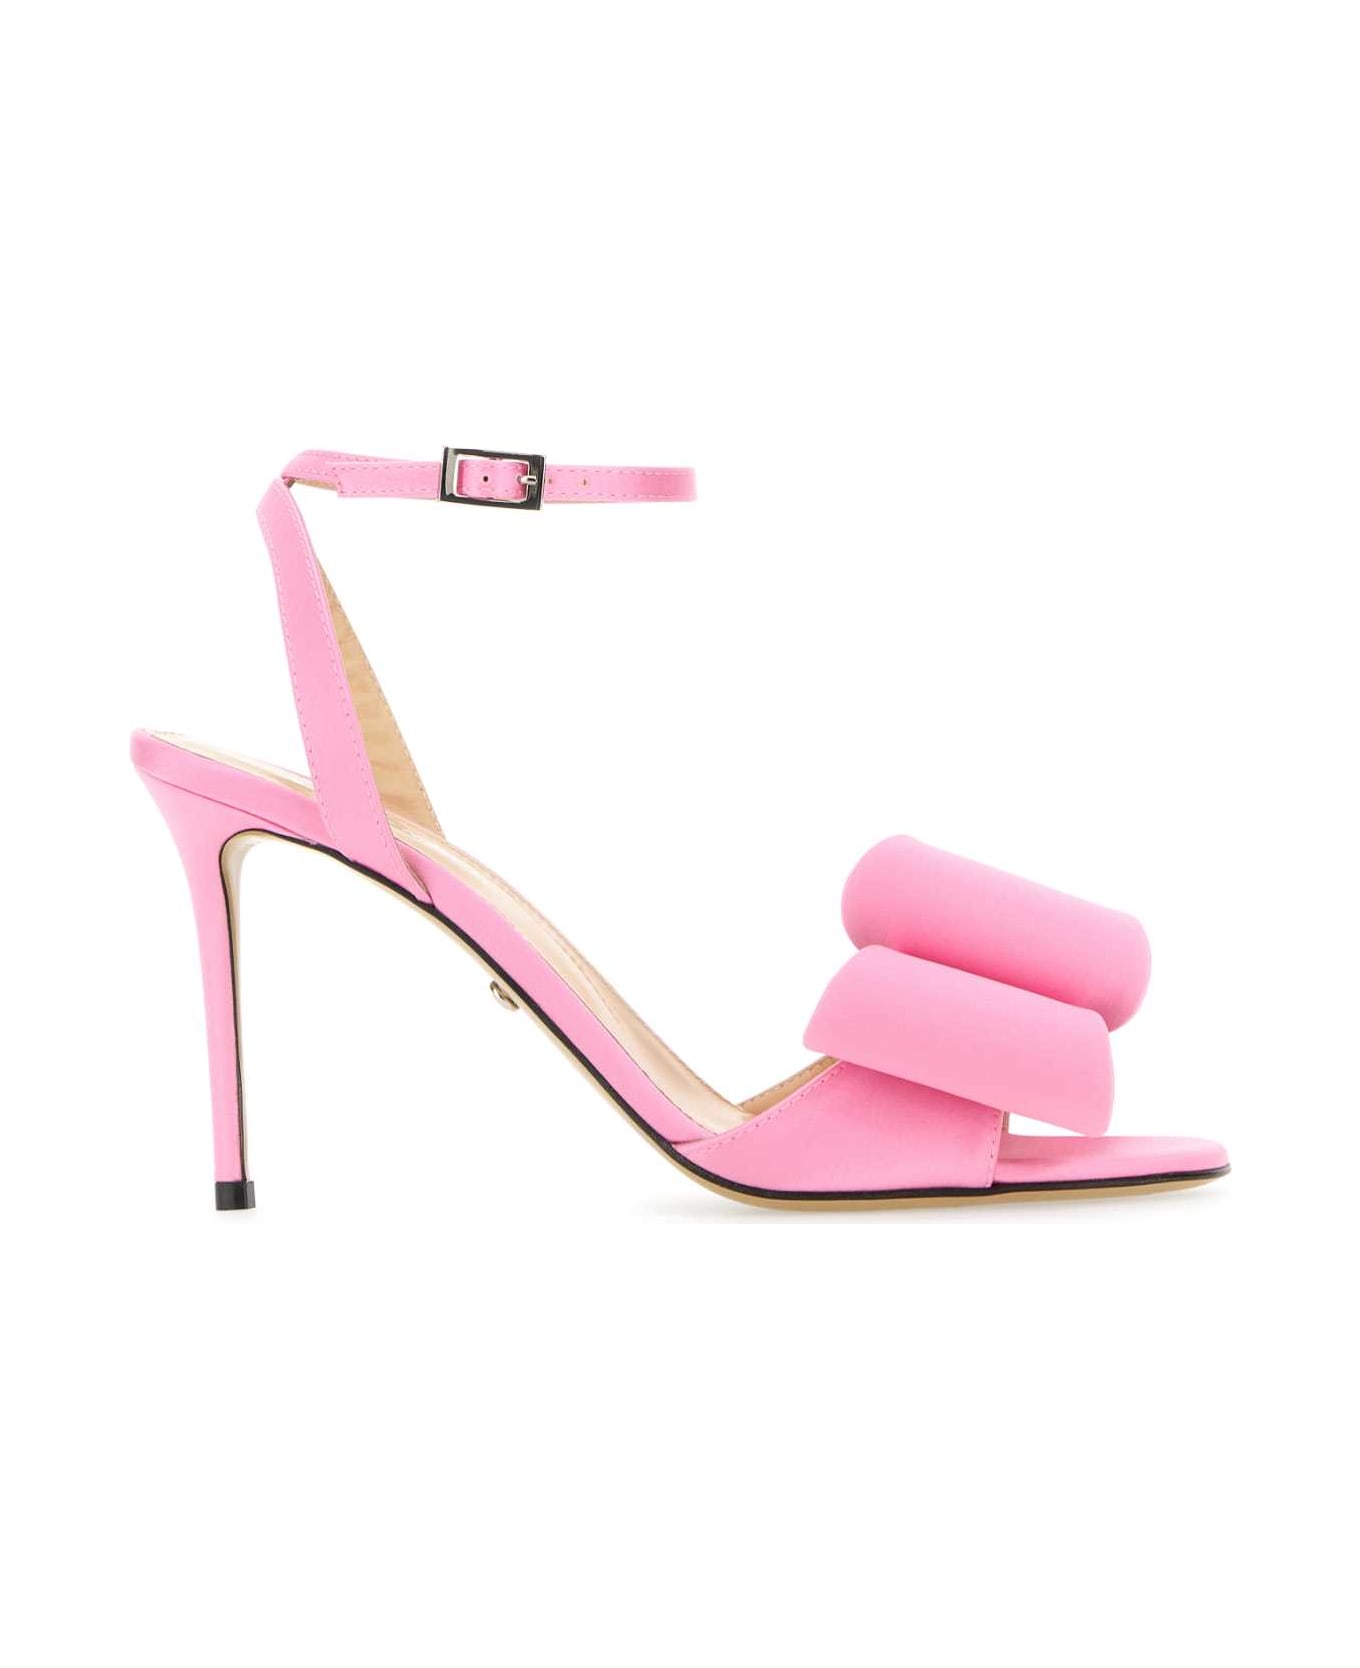 Mach & Mach Pink Satin Sandals - PINK